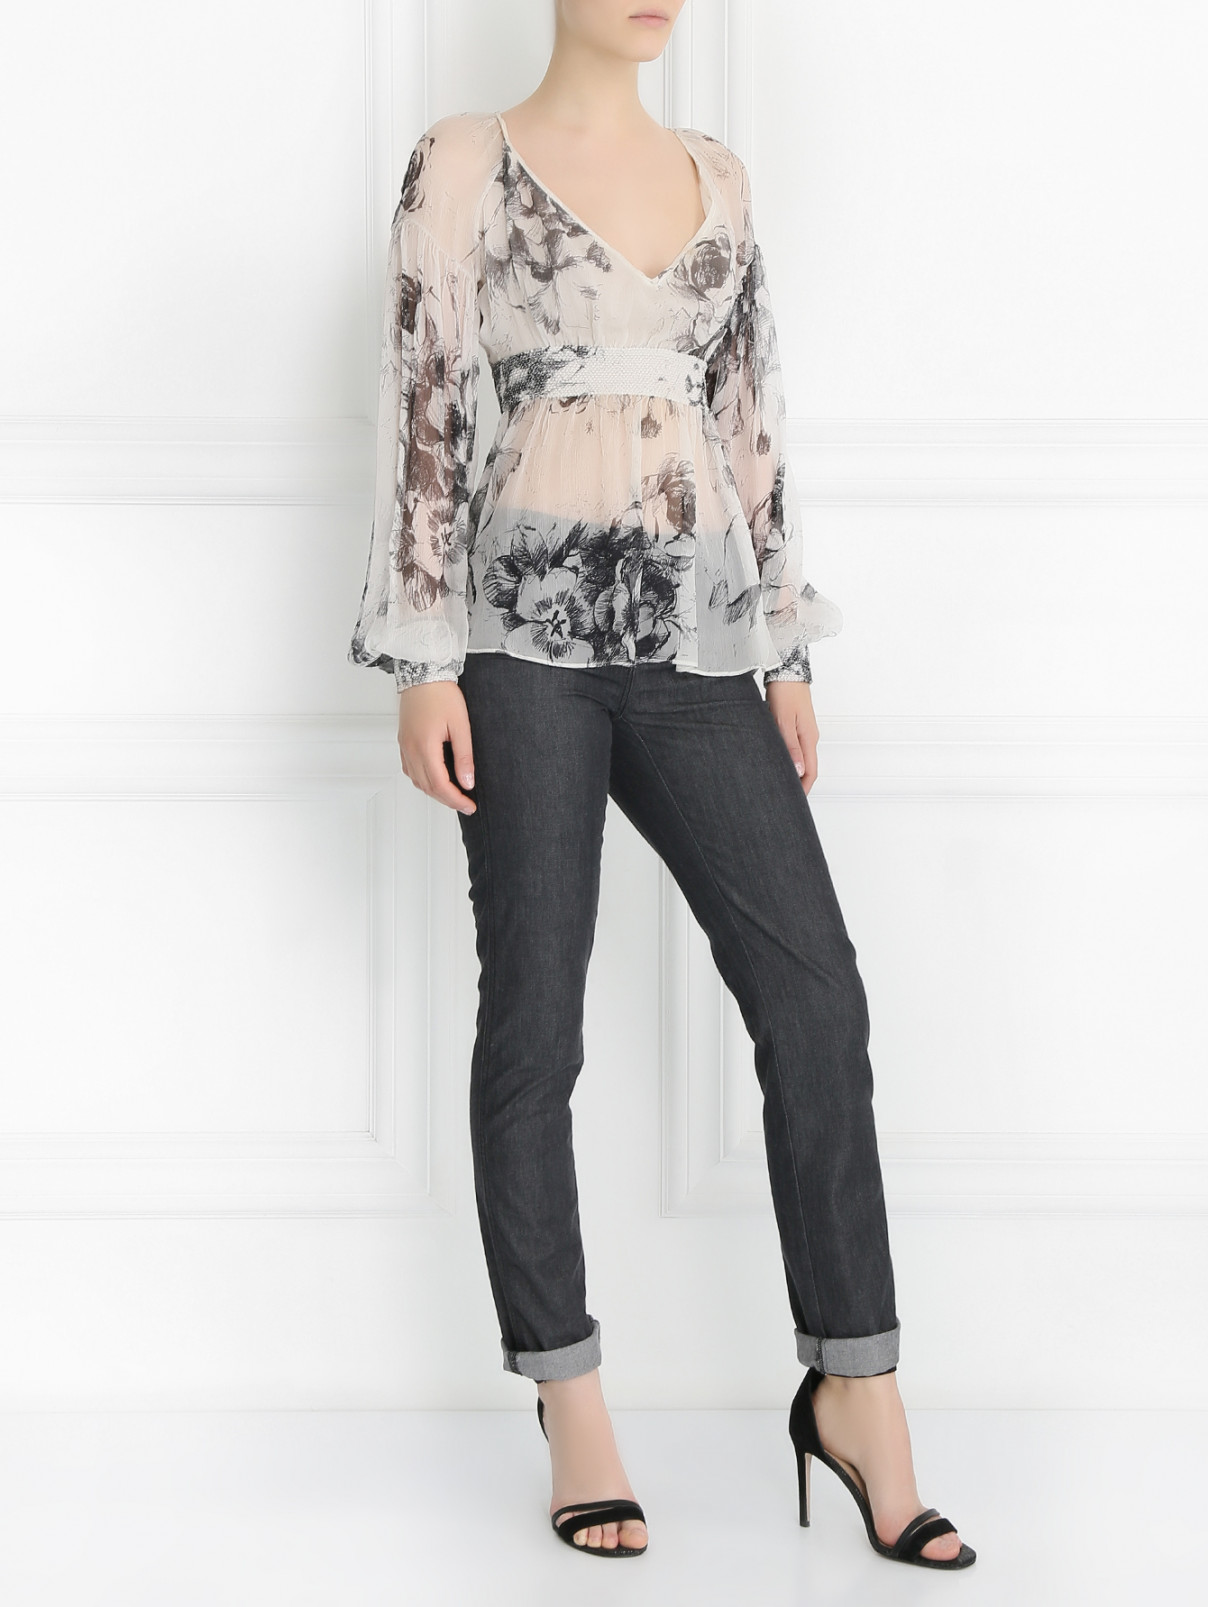 Джинсы на резинке Armani Jeans  –  Модель Общий вид  – Цвет:  Серый